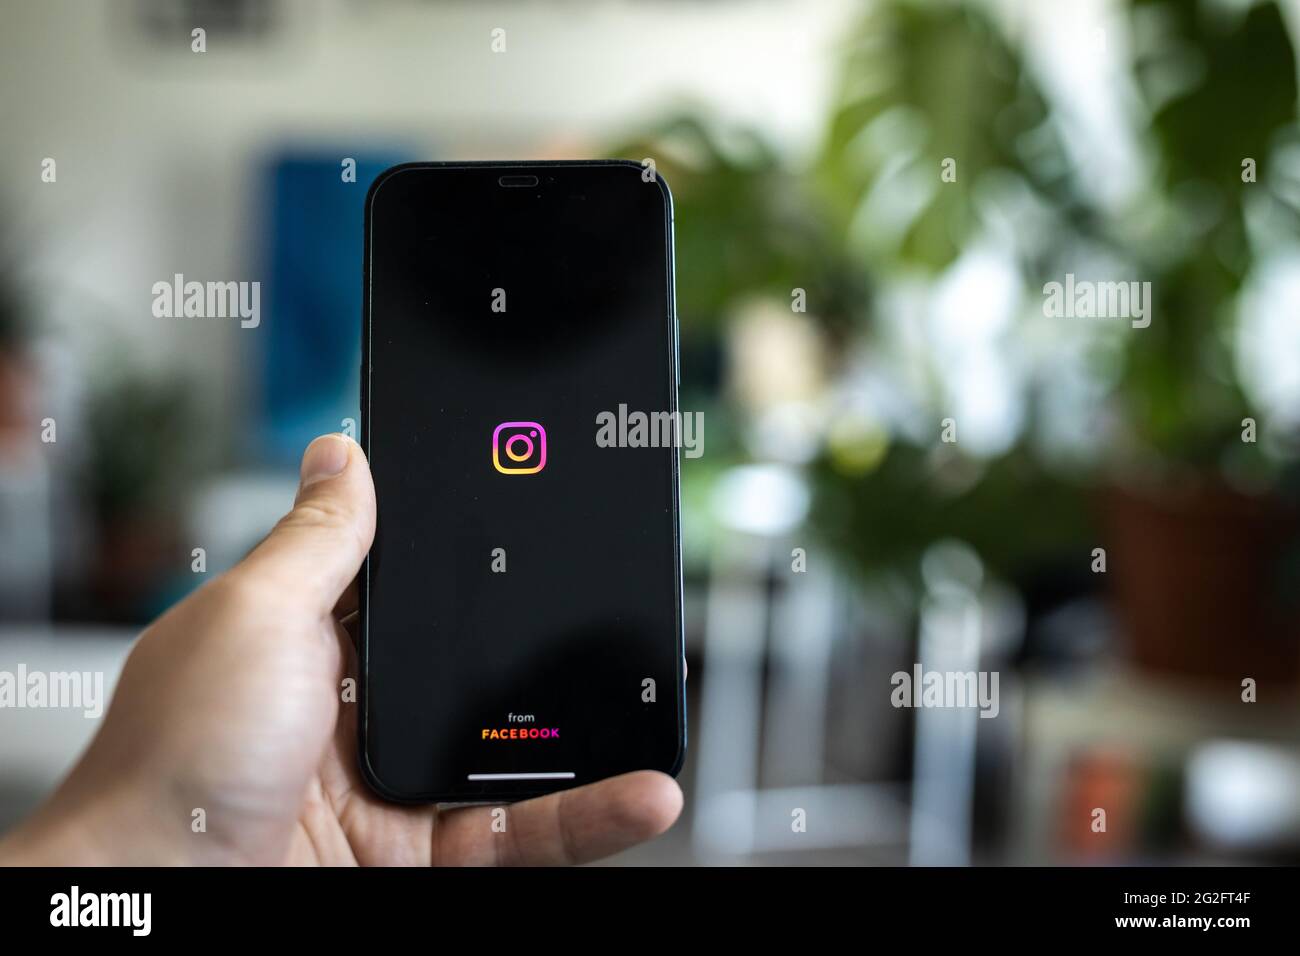 Instagram App öffnen, wie auf einem Handy-Bildschirm gesehen Stockfoto